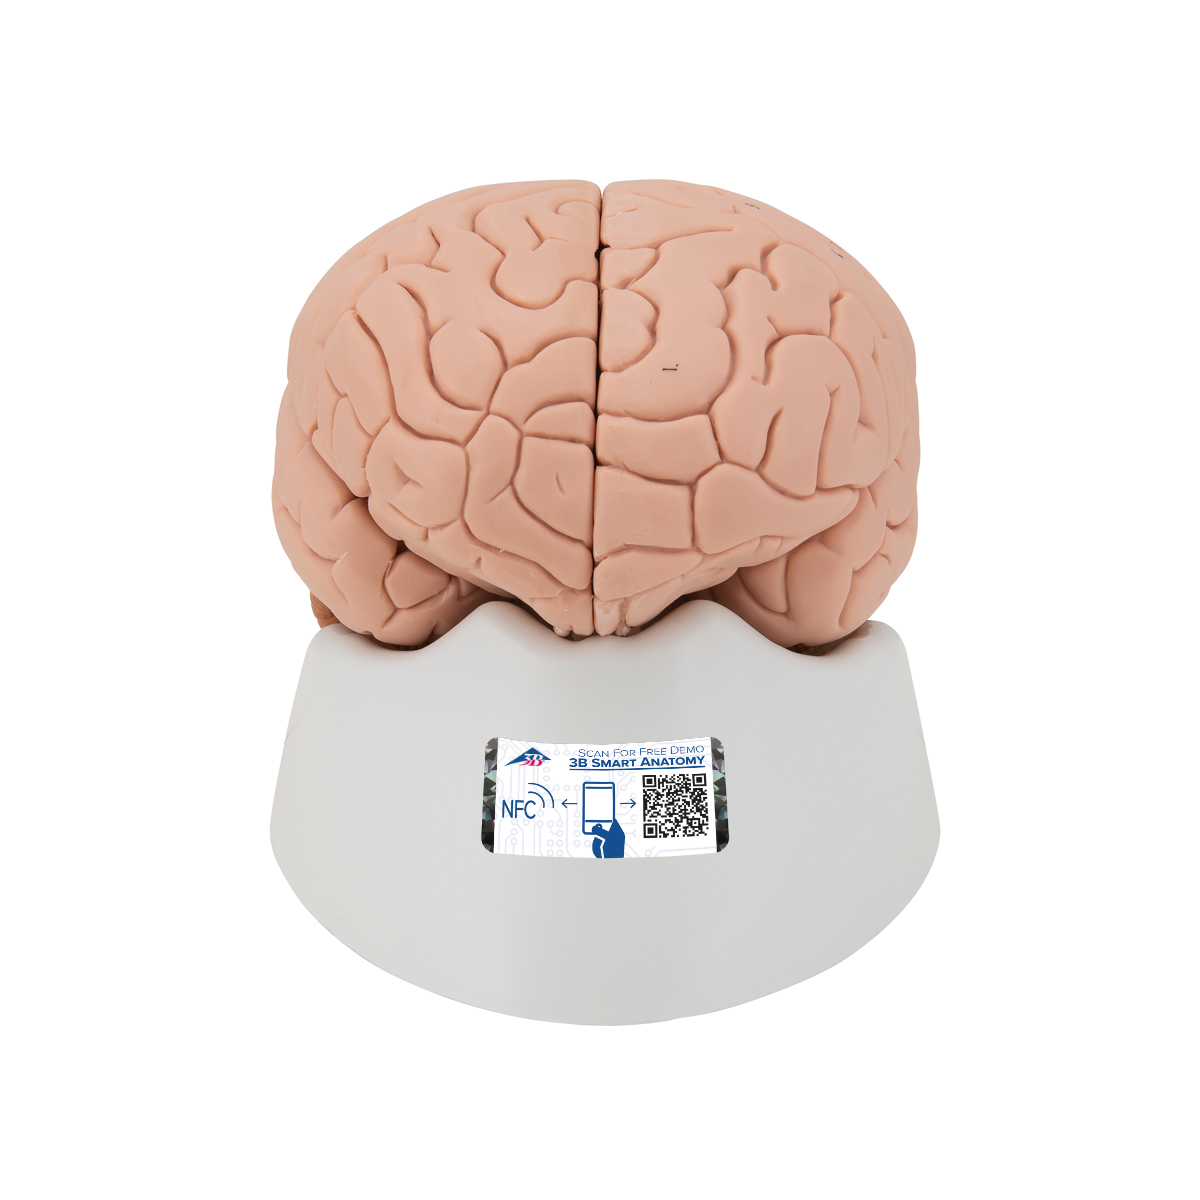 C15-1_01 Mozek, nervová soustava: Model mozku, 2 díly